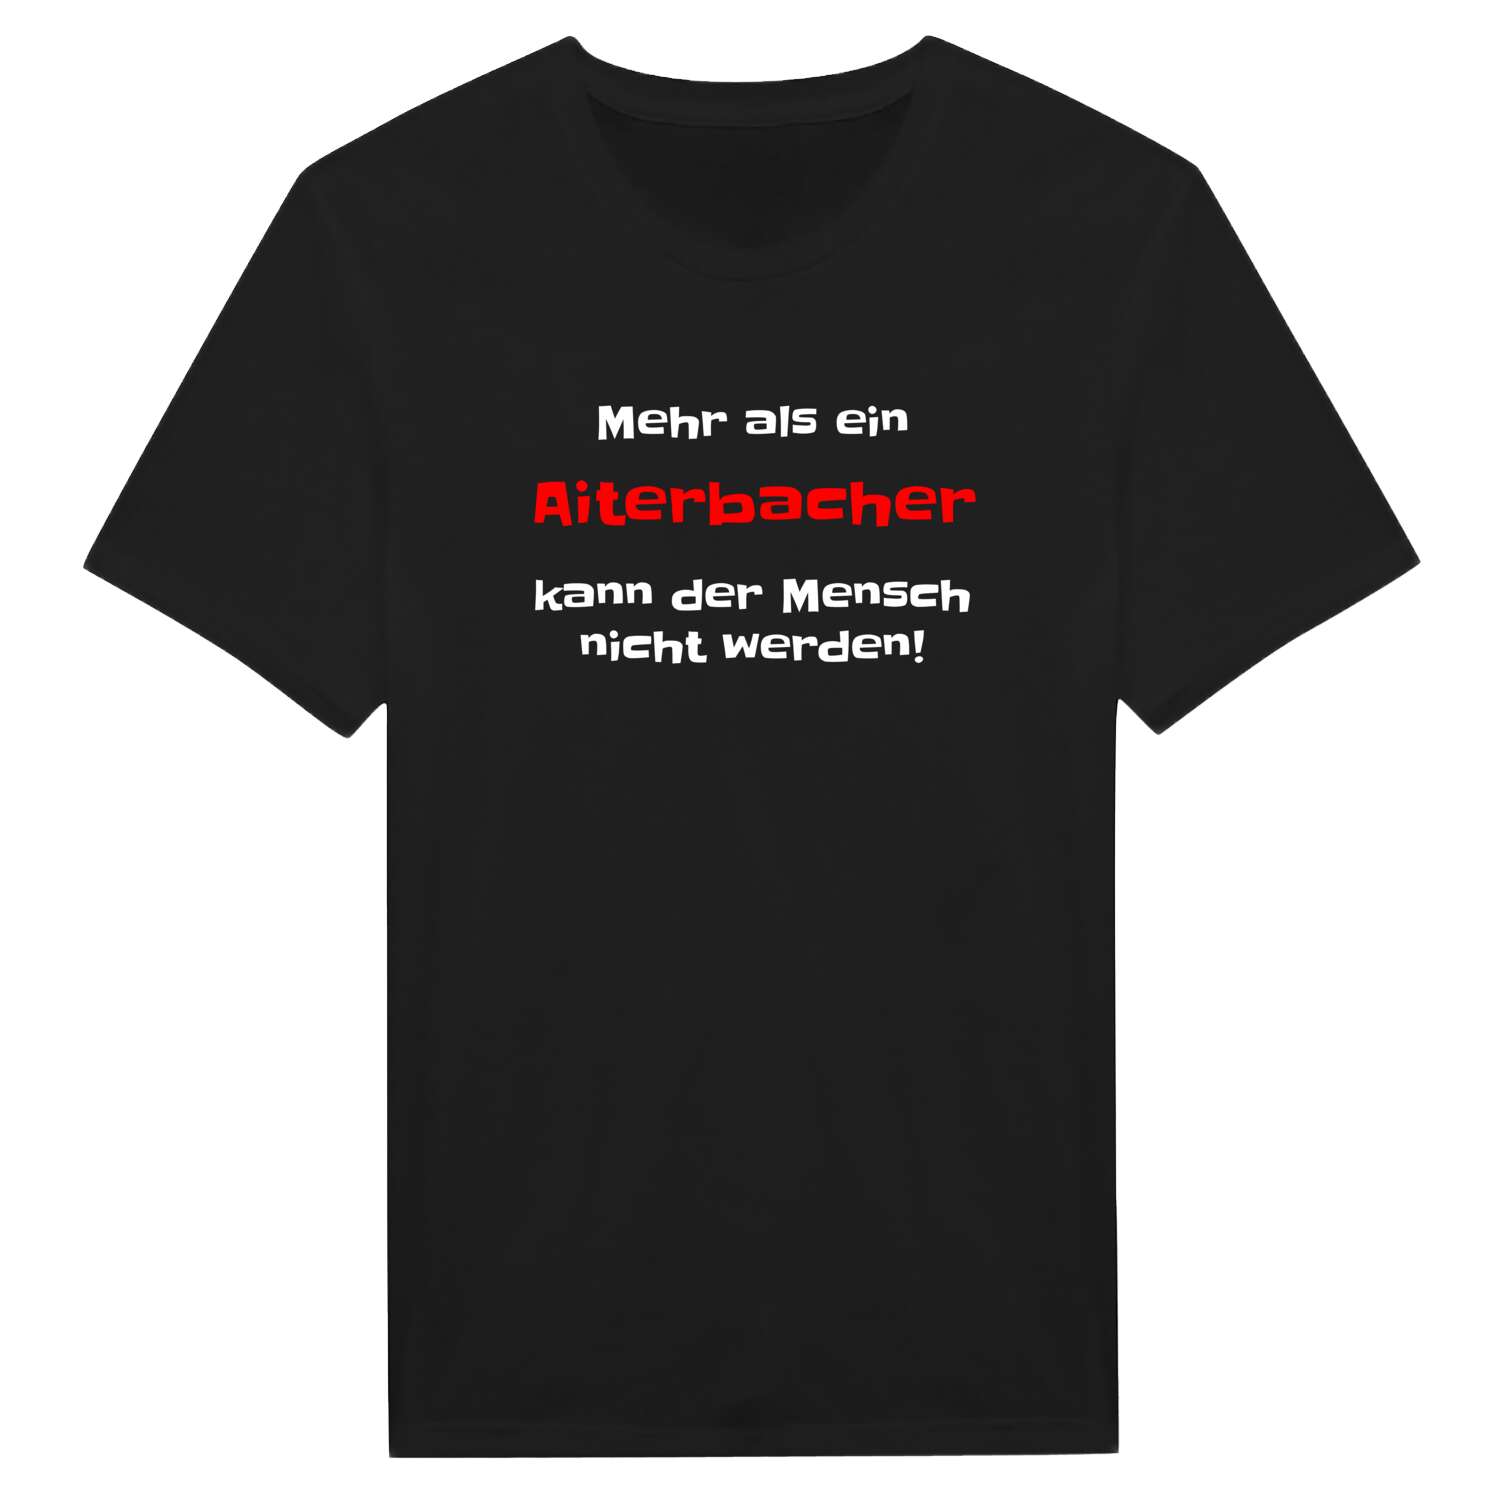 Aiterbach T-Shirt »Mehr als ein«